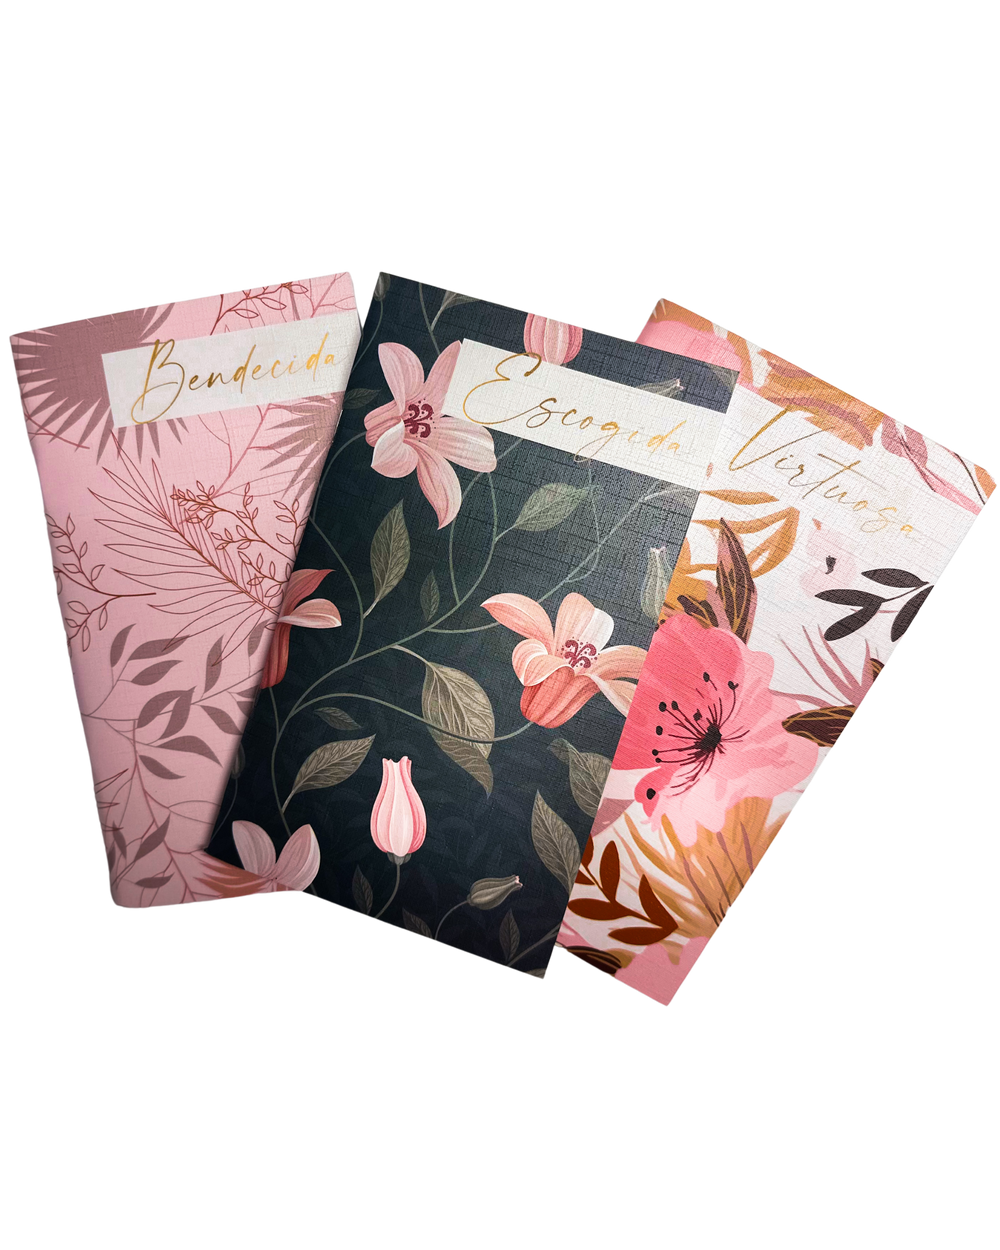 Libretas Escogida, Bendecida, Virtuosa (Paquete de 3) | Floral Pink